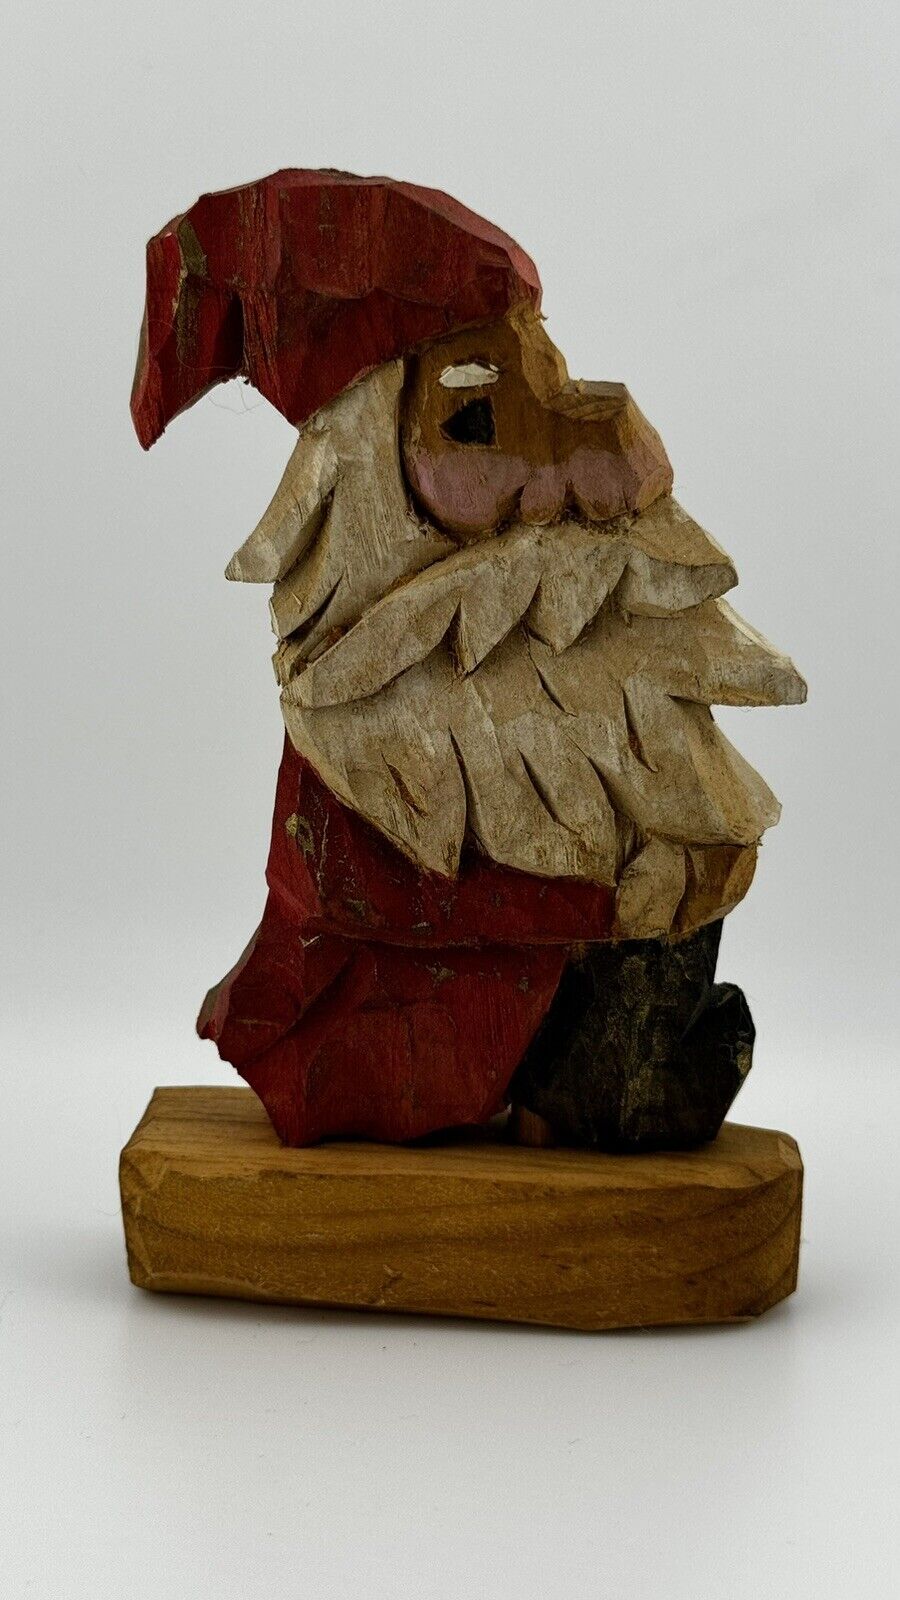 Vintage 1981 Hand-Carved Signed Wooden Santa Figurine